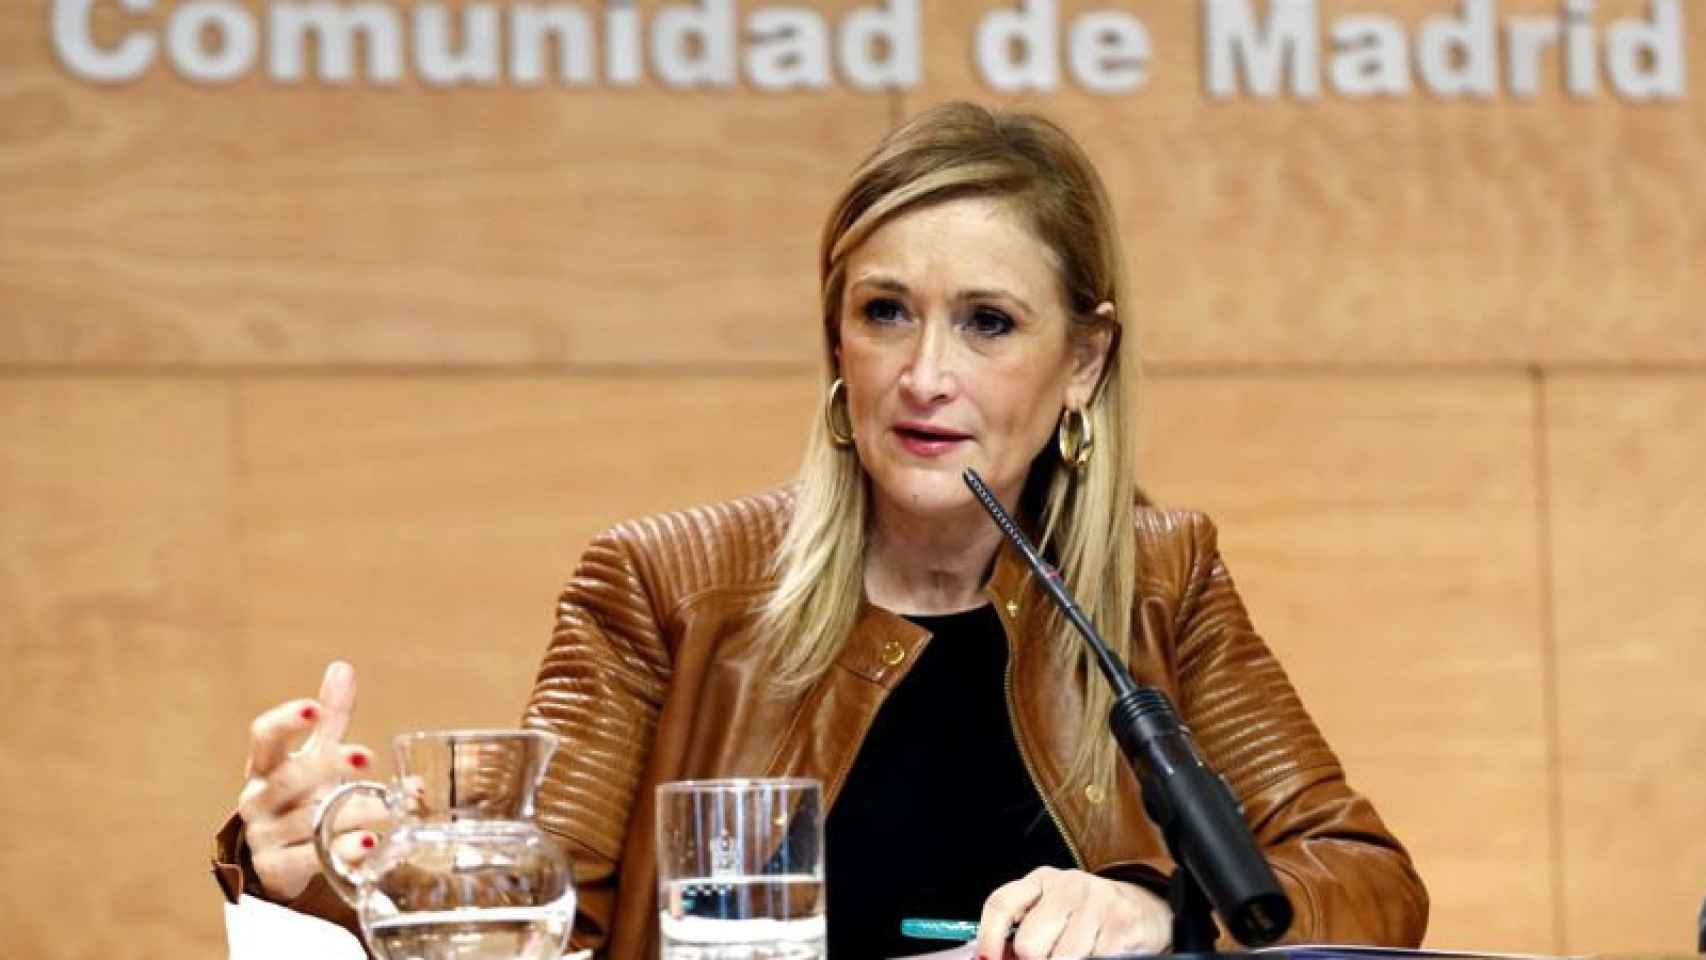 La presidenta de la Comunidad de Madrid, Cristina Cifuentes.